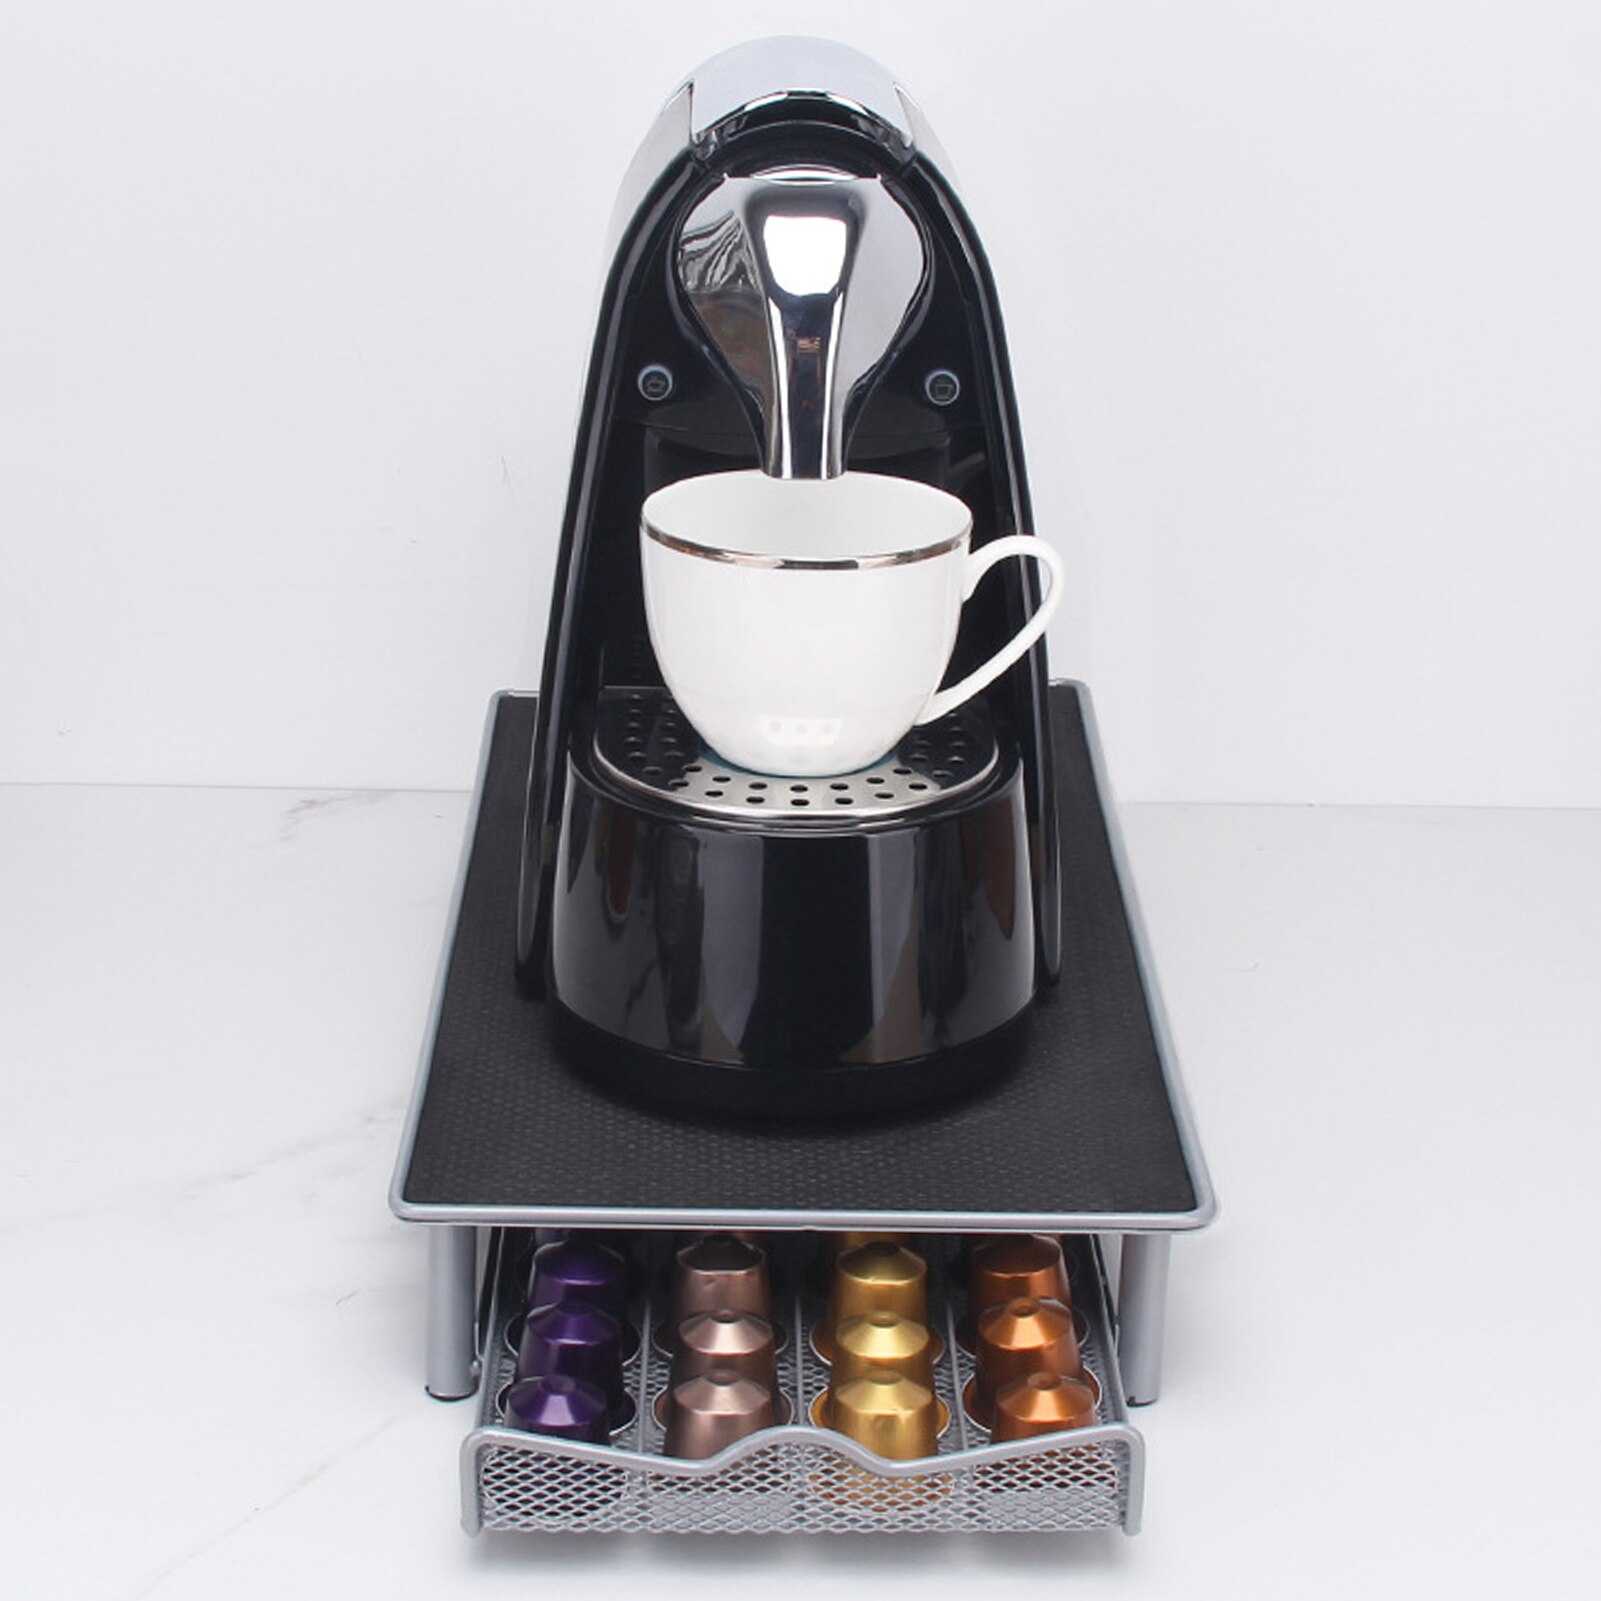 Husholdnings praktisk jernkaffe kapsel skuffe arrangør opbevarings stativ holder rack til nespresso kaffe kapsel hylder